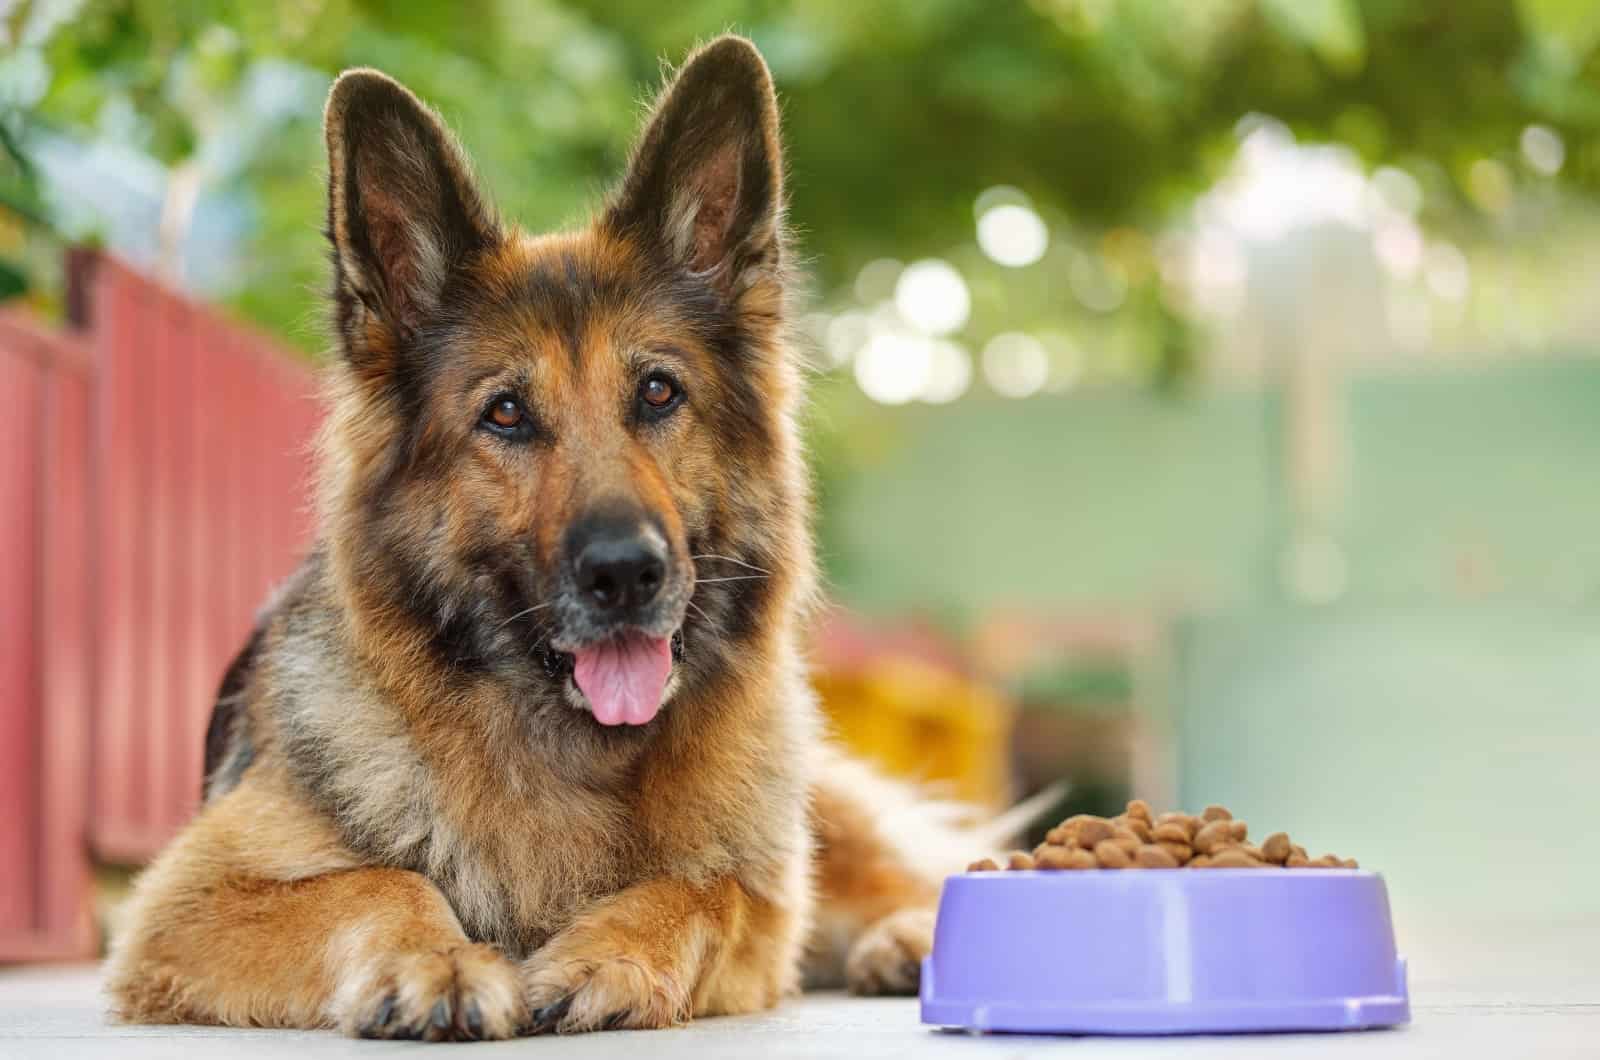 German Shepherd sitting by his food